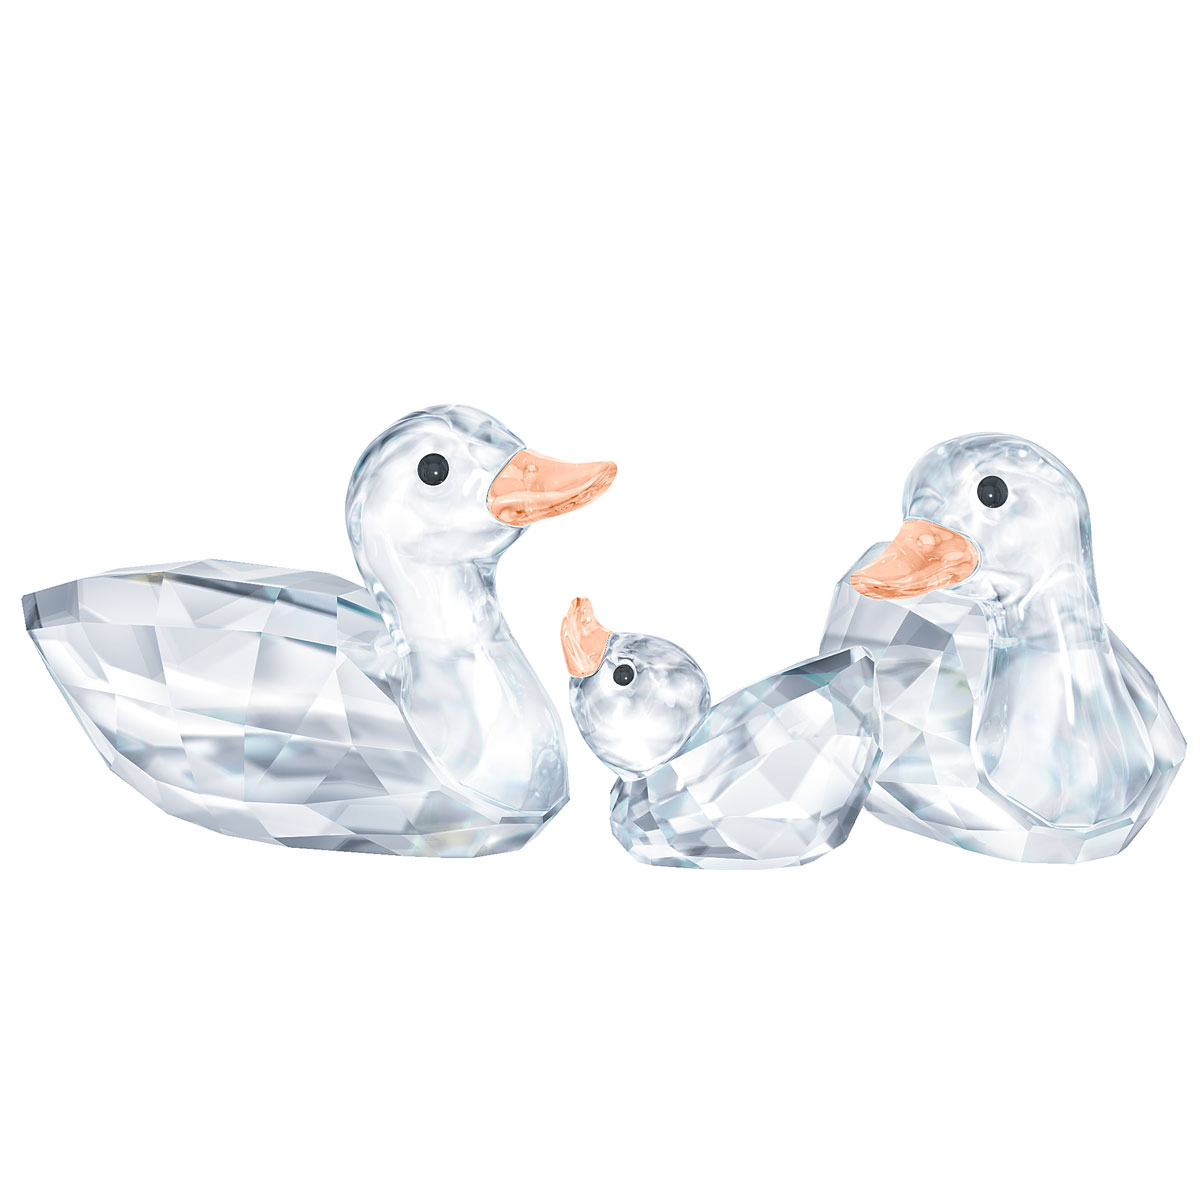 Swarovski Crystal Ducks